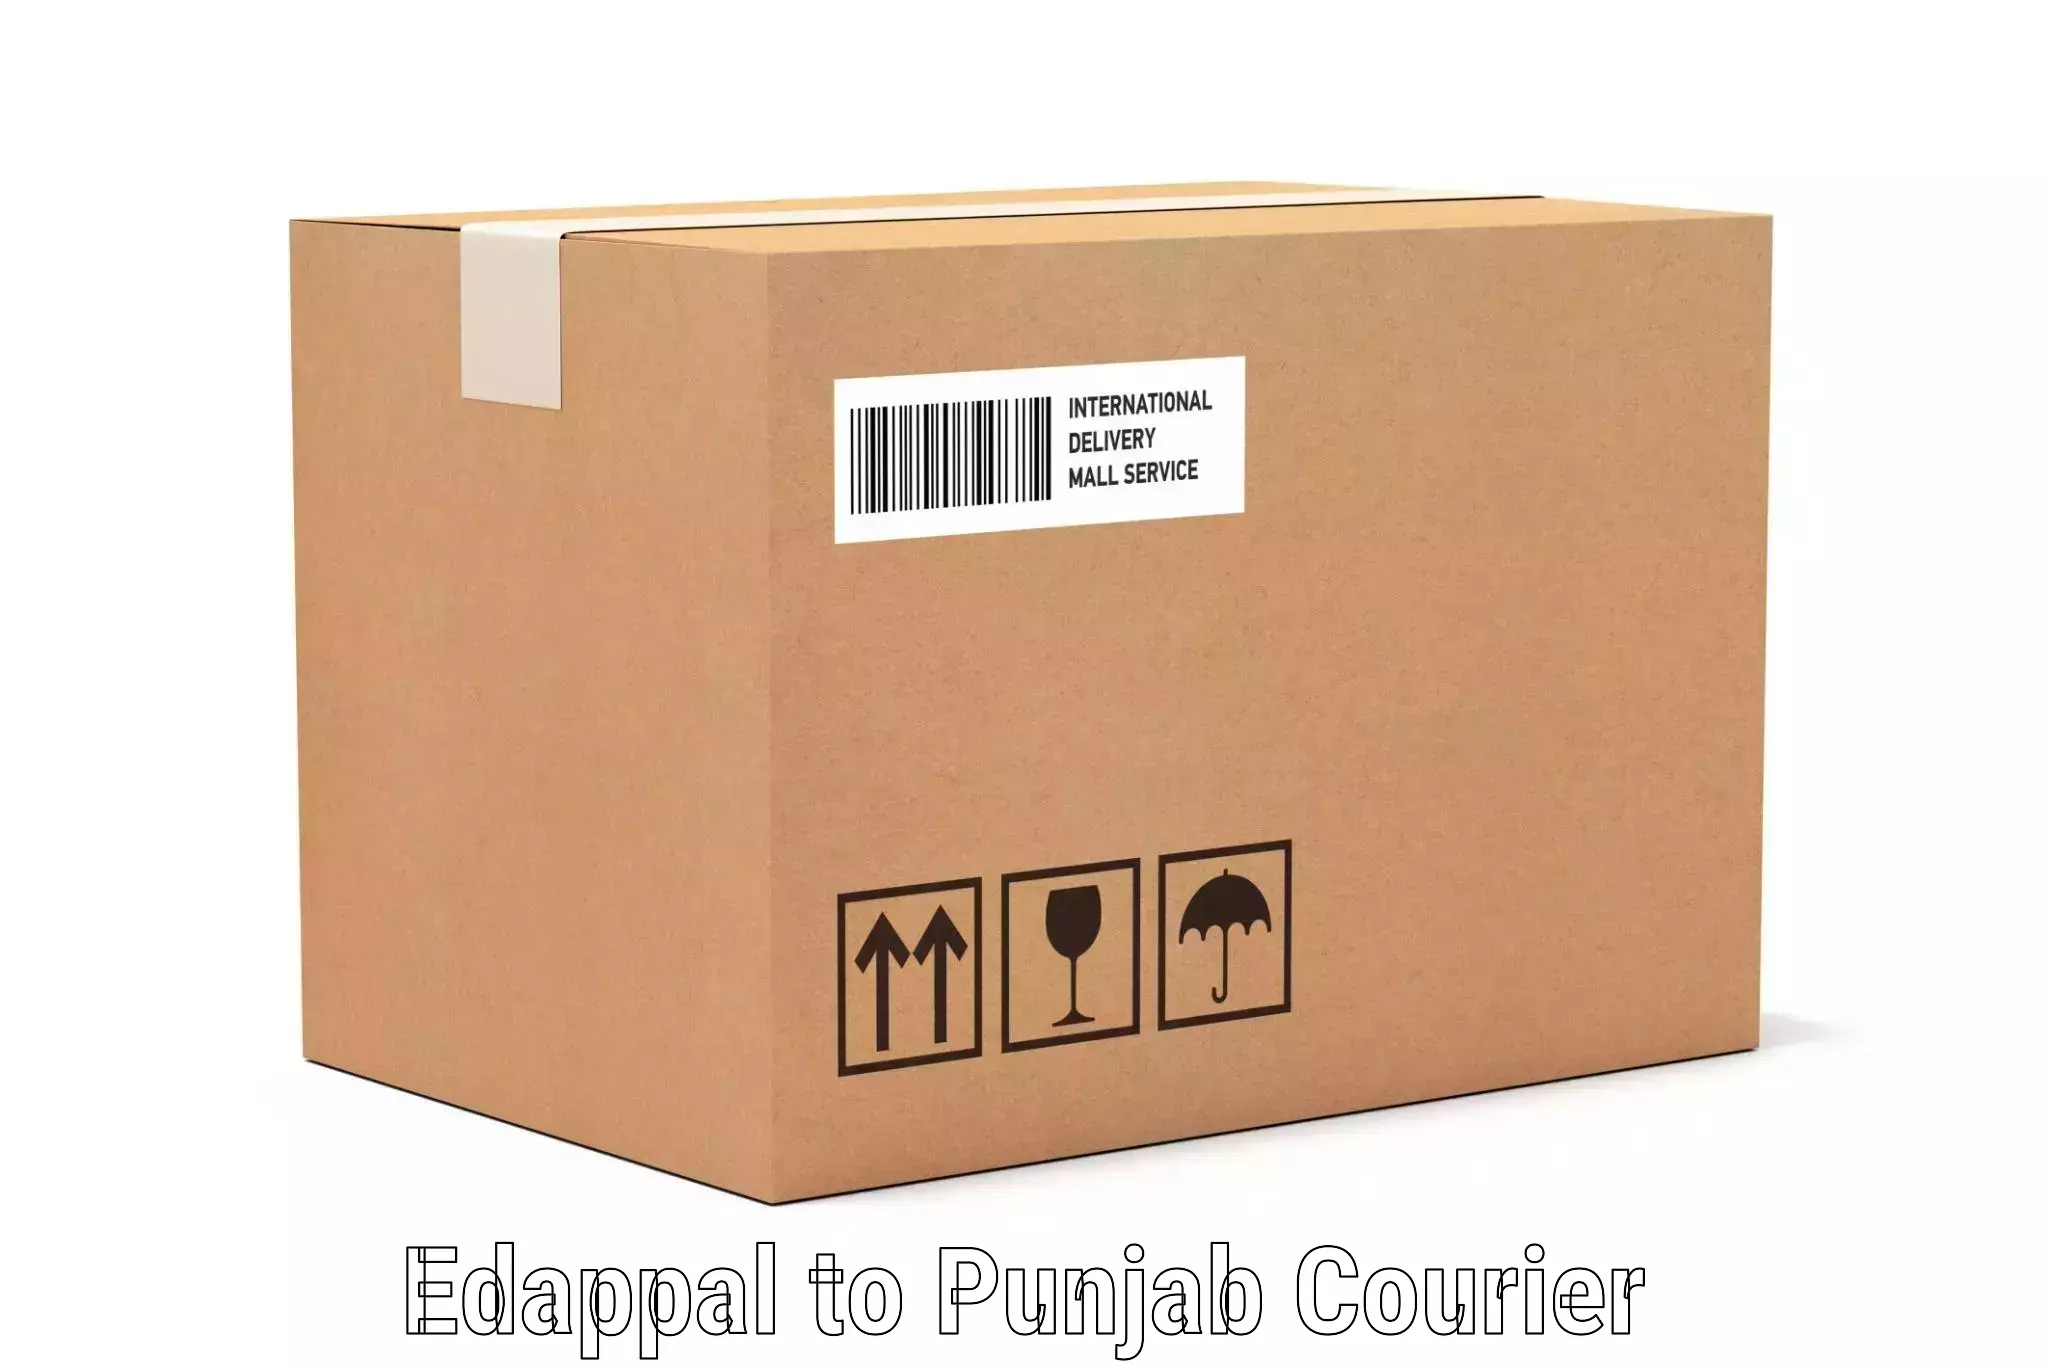 Baggage transport updates Edappal to Punjab